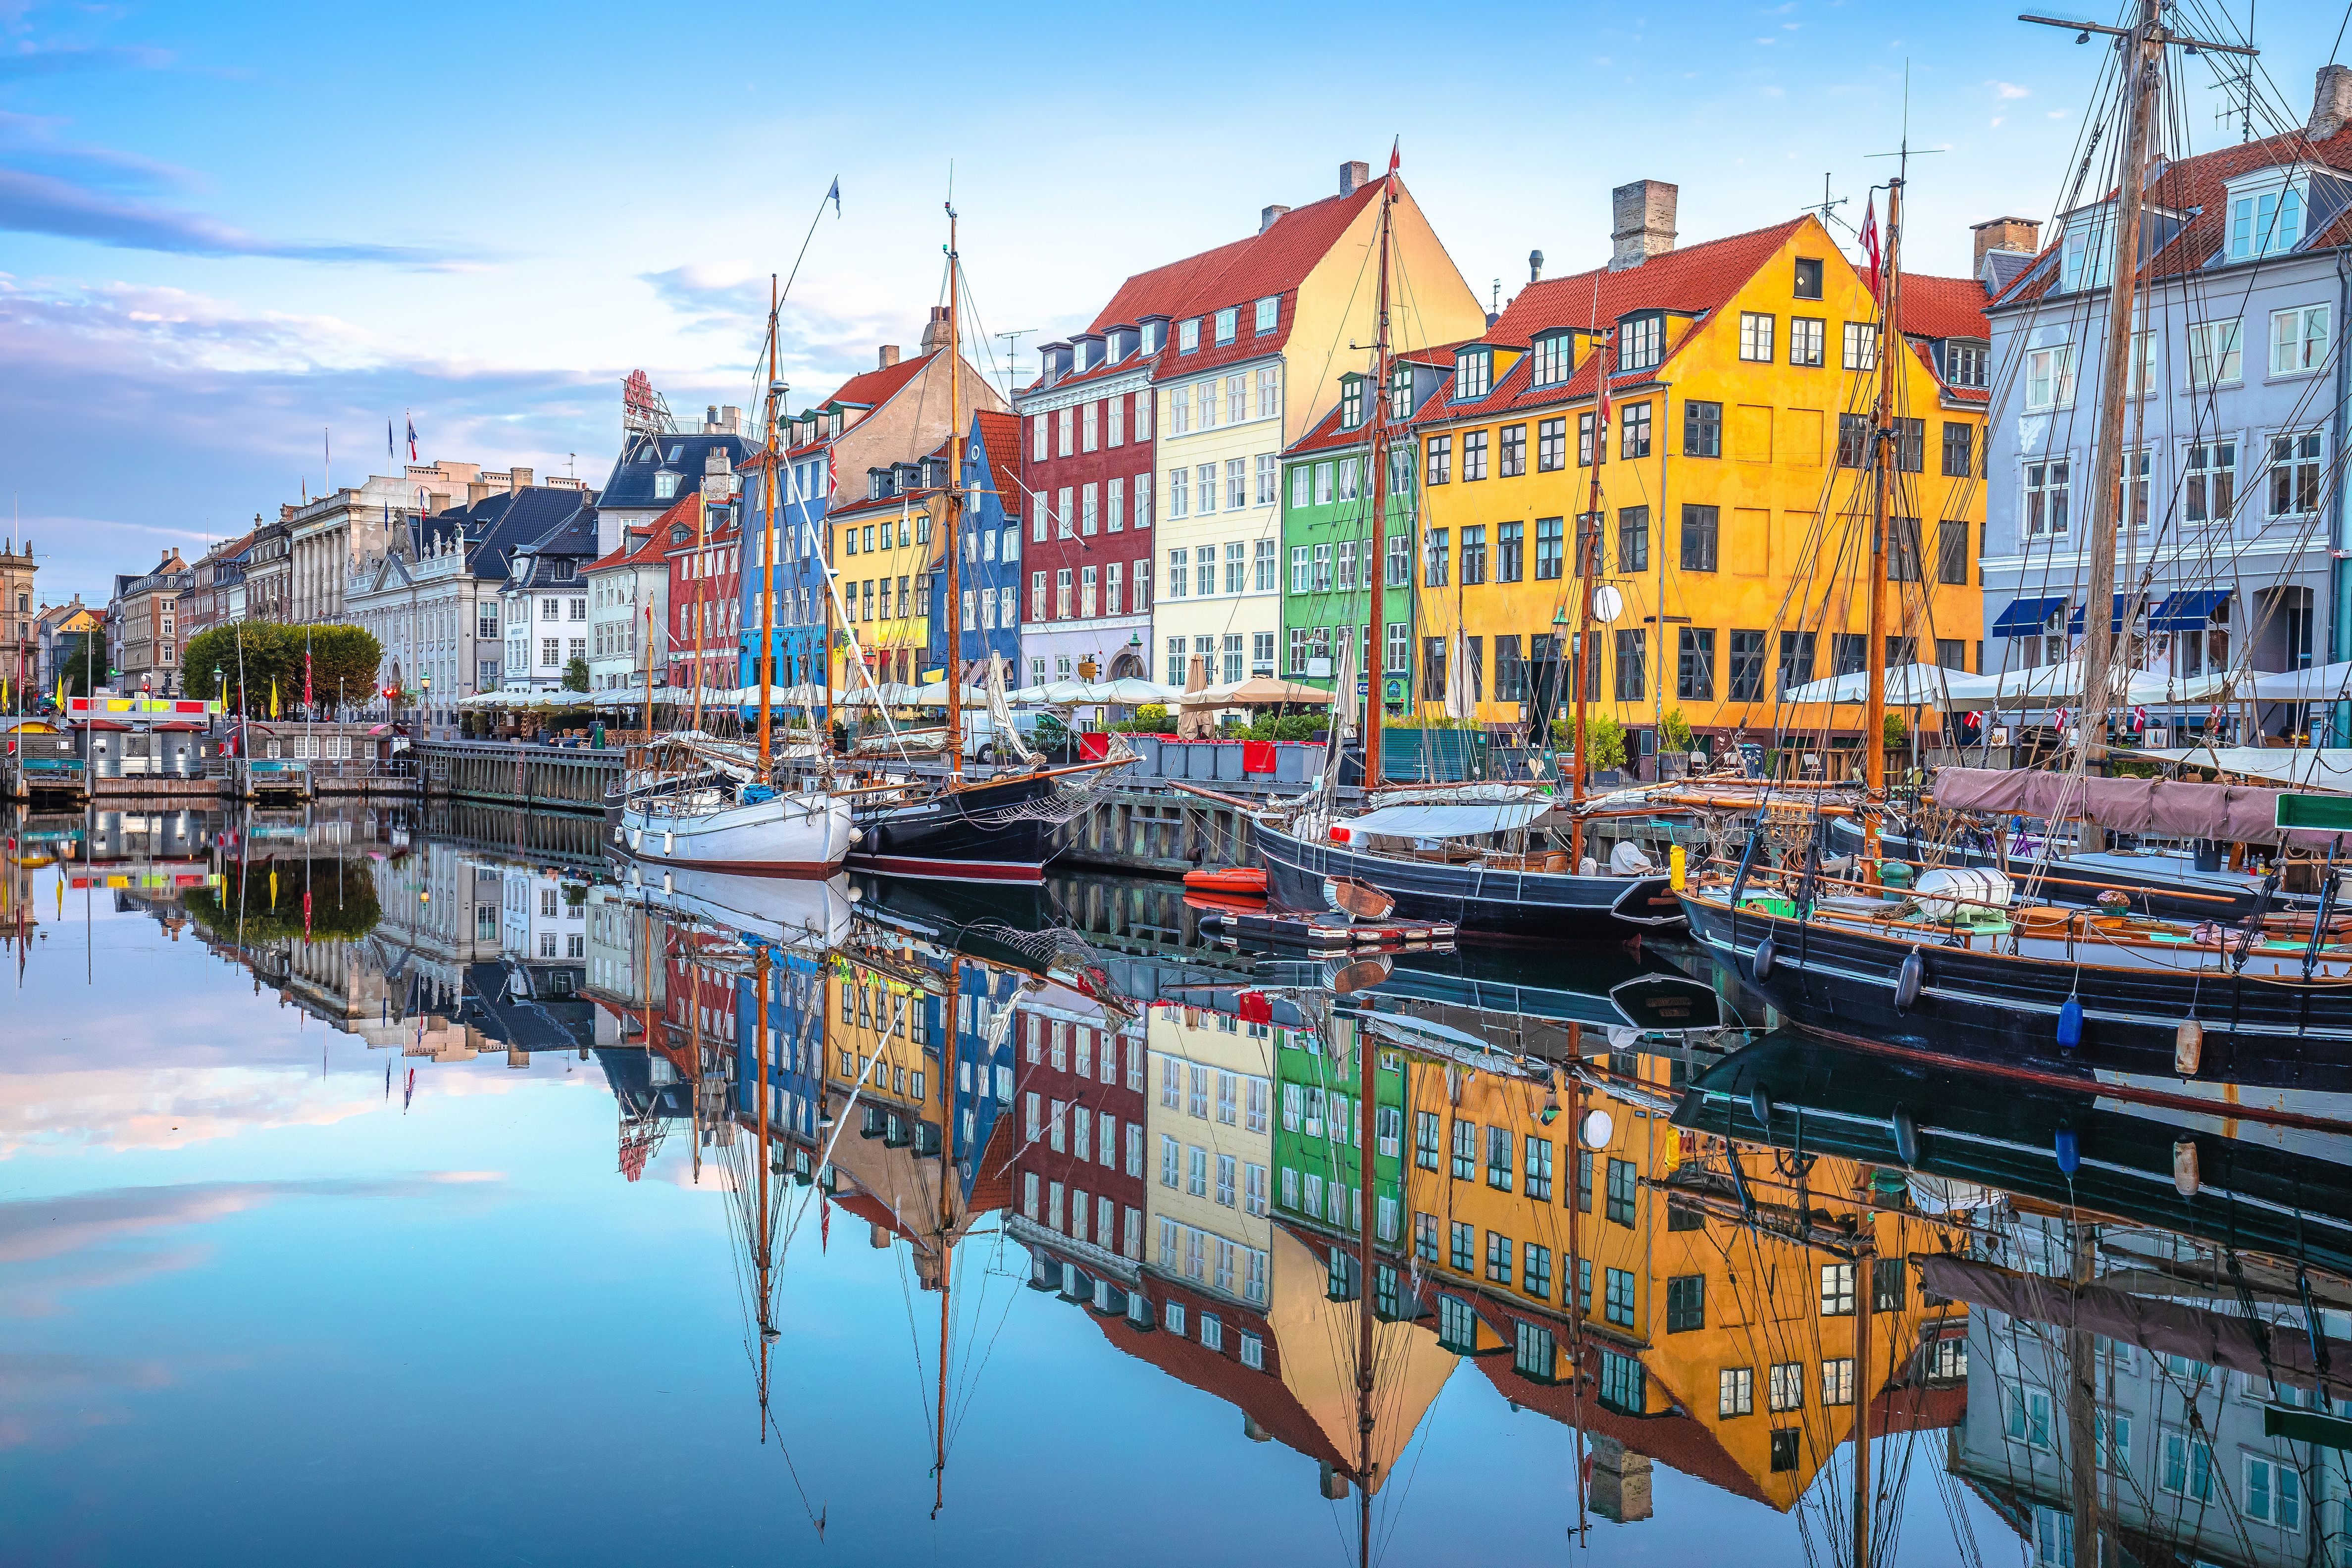 Eine weitere europäische Stadt taucht regelmäßig in der Top Ten europa- und weltweiter Städterankings auf: Kopenhagen. Als Gründe dafür werden unter anderem der spannende Mix aus alter und moderner Architektur, die vielen Grünflächen und das saubere Hafenbecken genannt, in dem man sogar baden kann. Außerdem gilt die dänische Hauptstadt als fahrradfreundlichste Stadt der Welt.